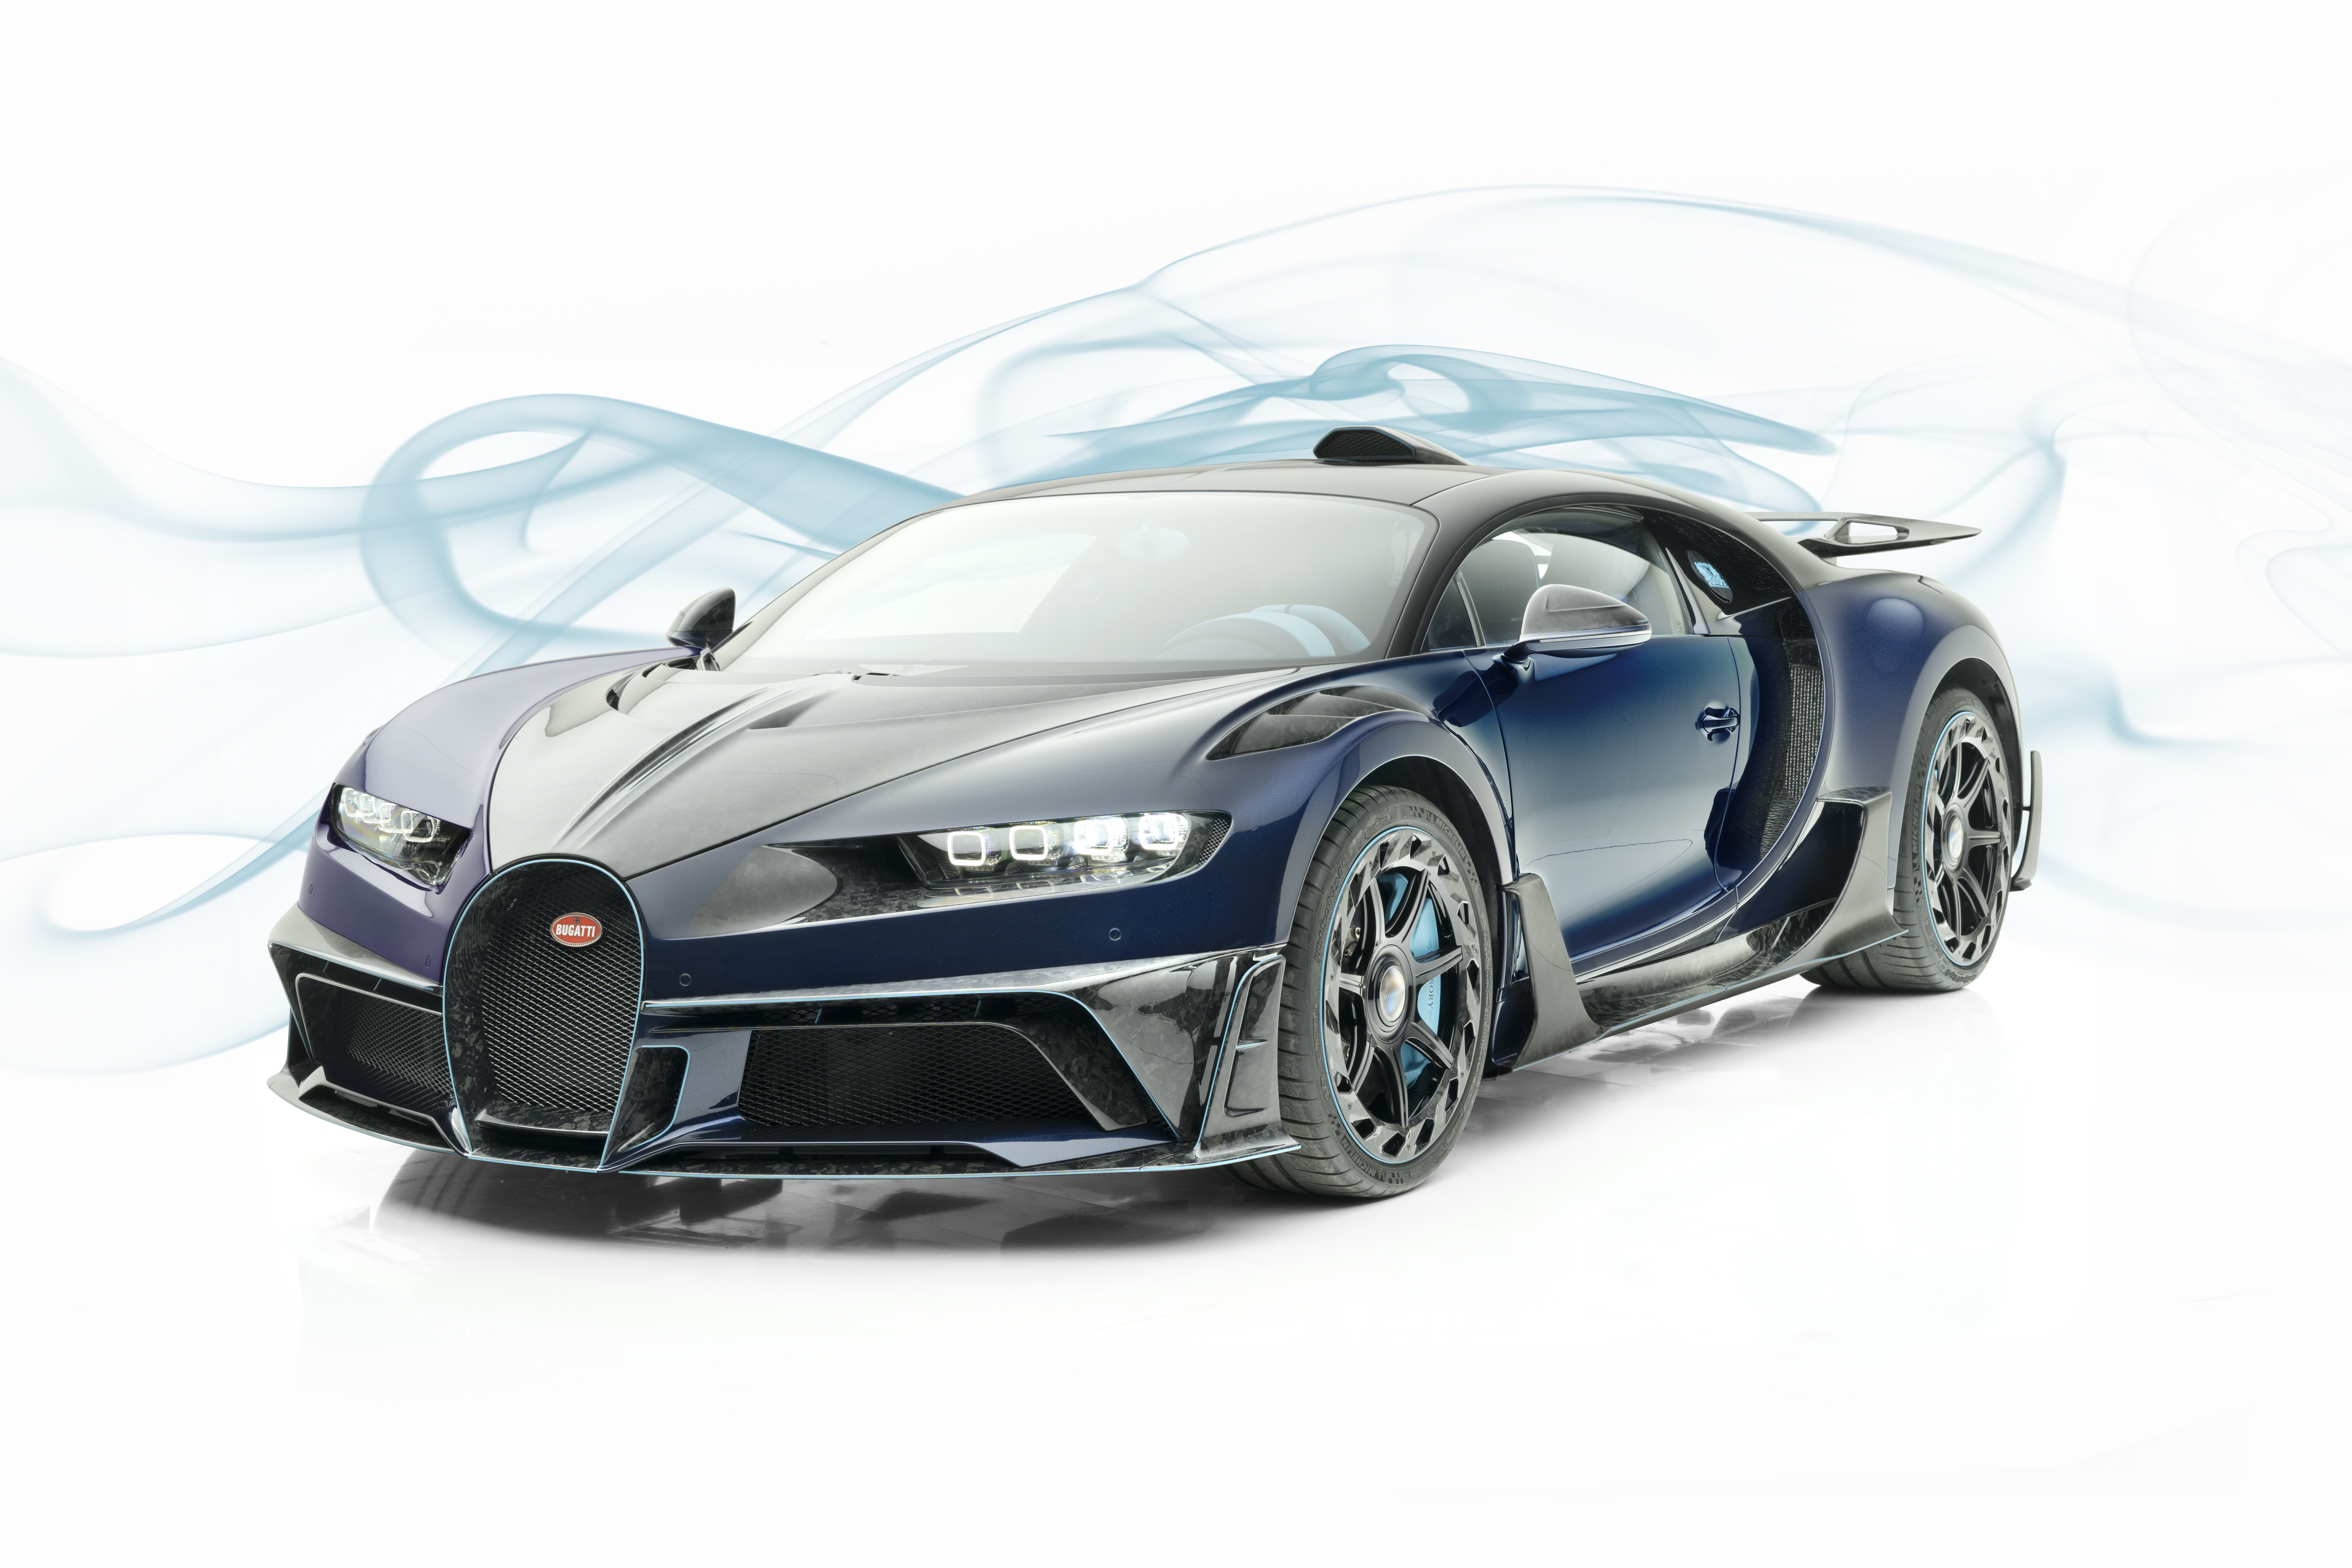 Bugatti Chiron Centuria Mansory , HD Wallpaper & Backgrounds